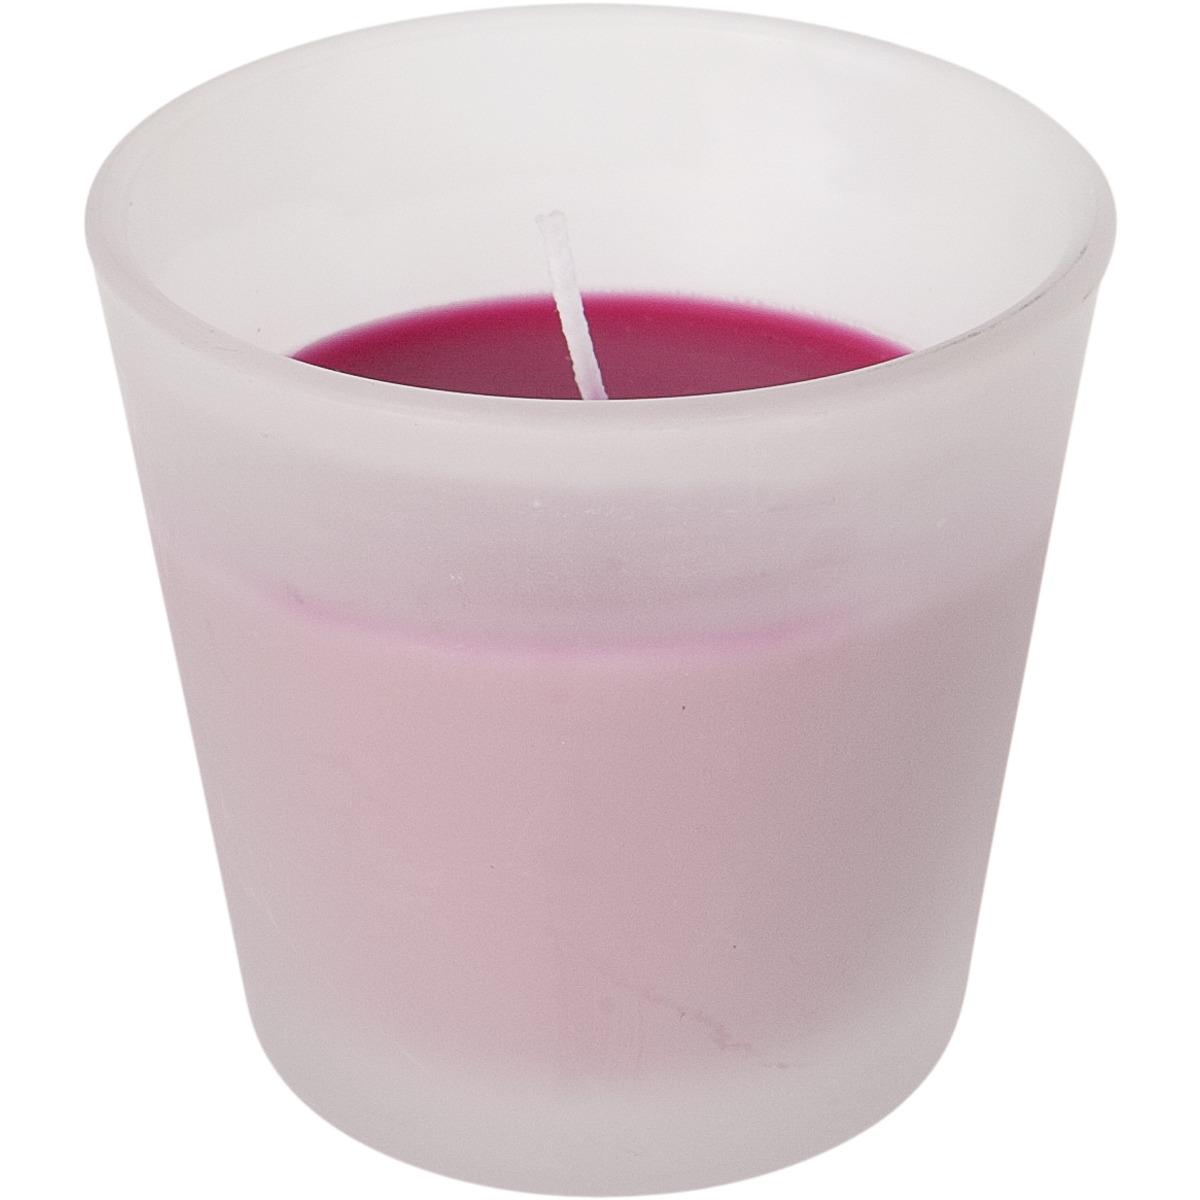 Bougie dans son pot en verre givré - 7,5 x 7,5 cm - Rose fushia